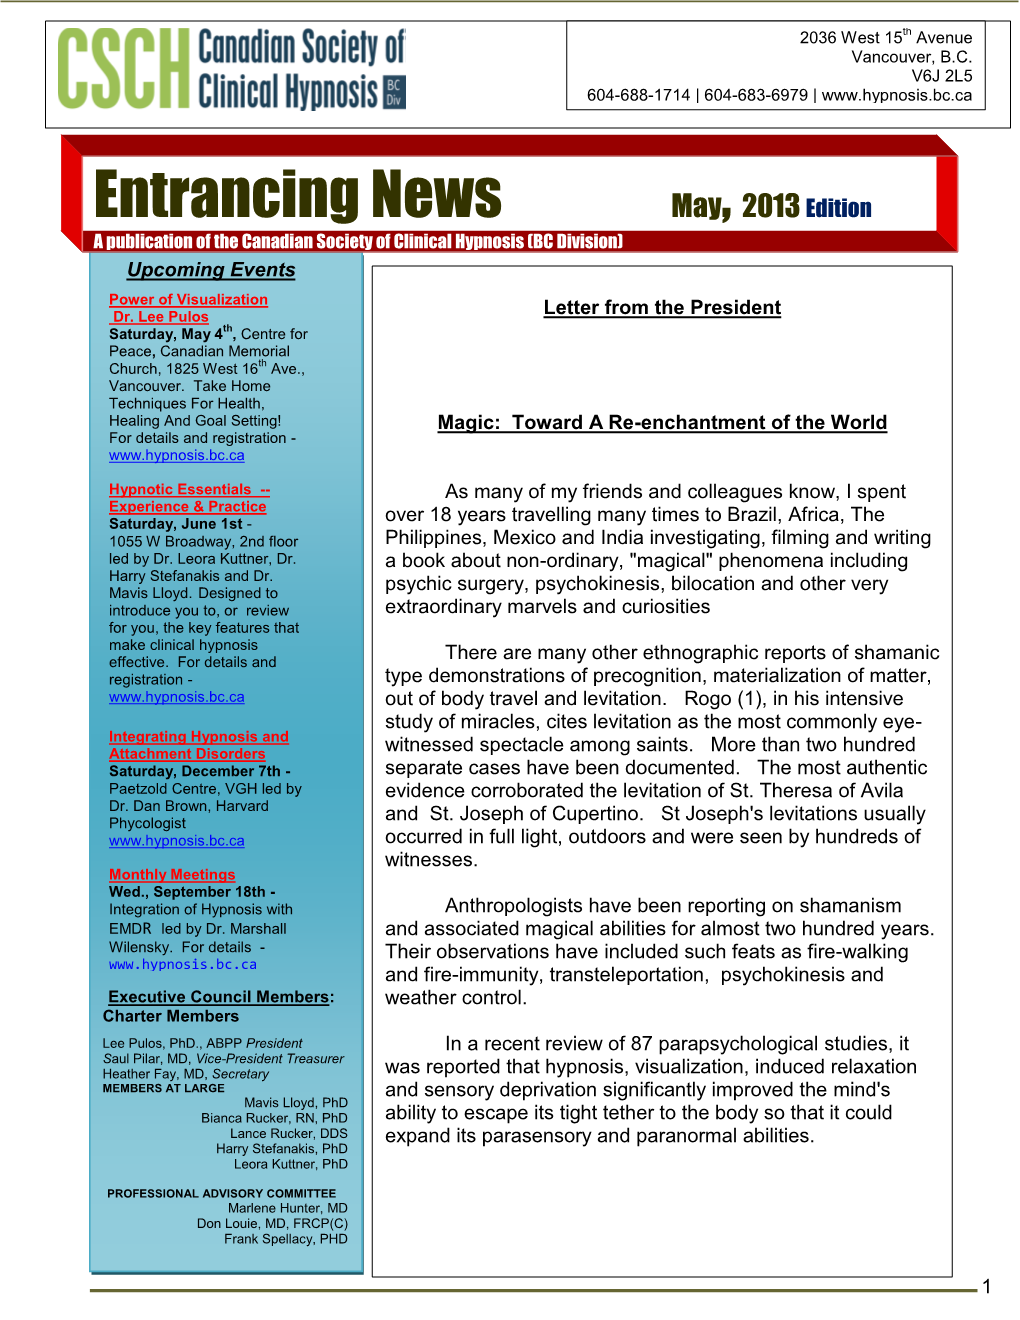 Entrancing News May, 2013 Edition